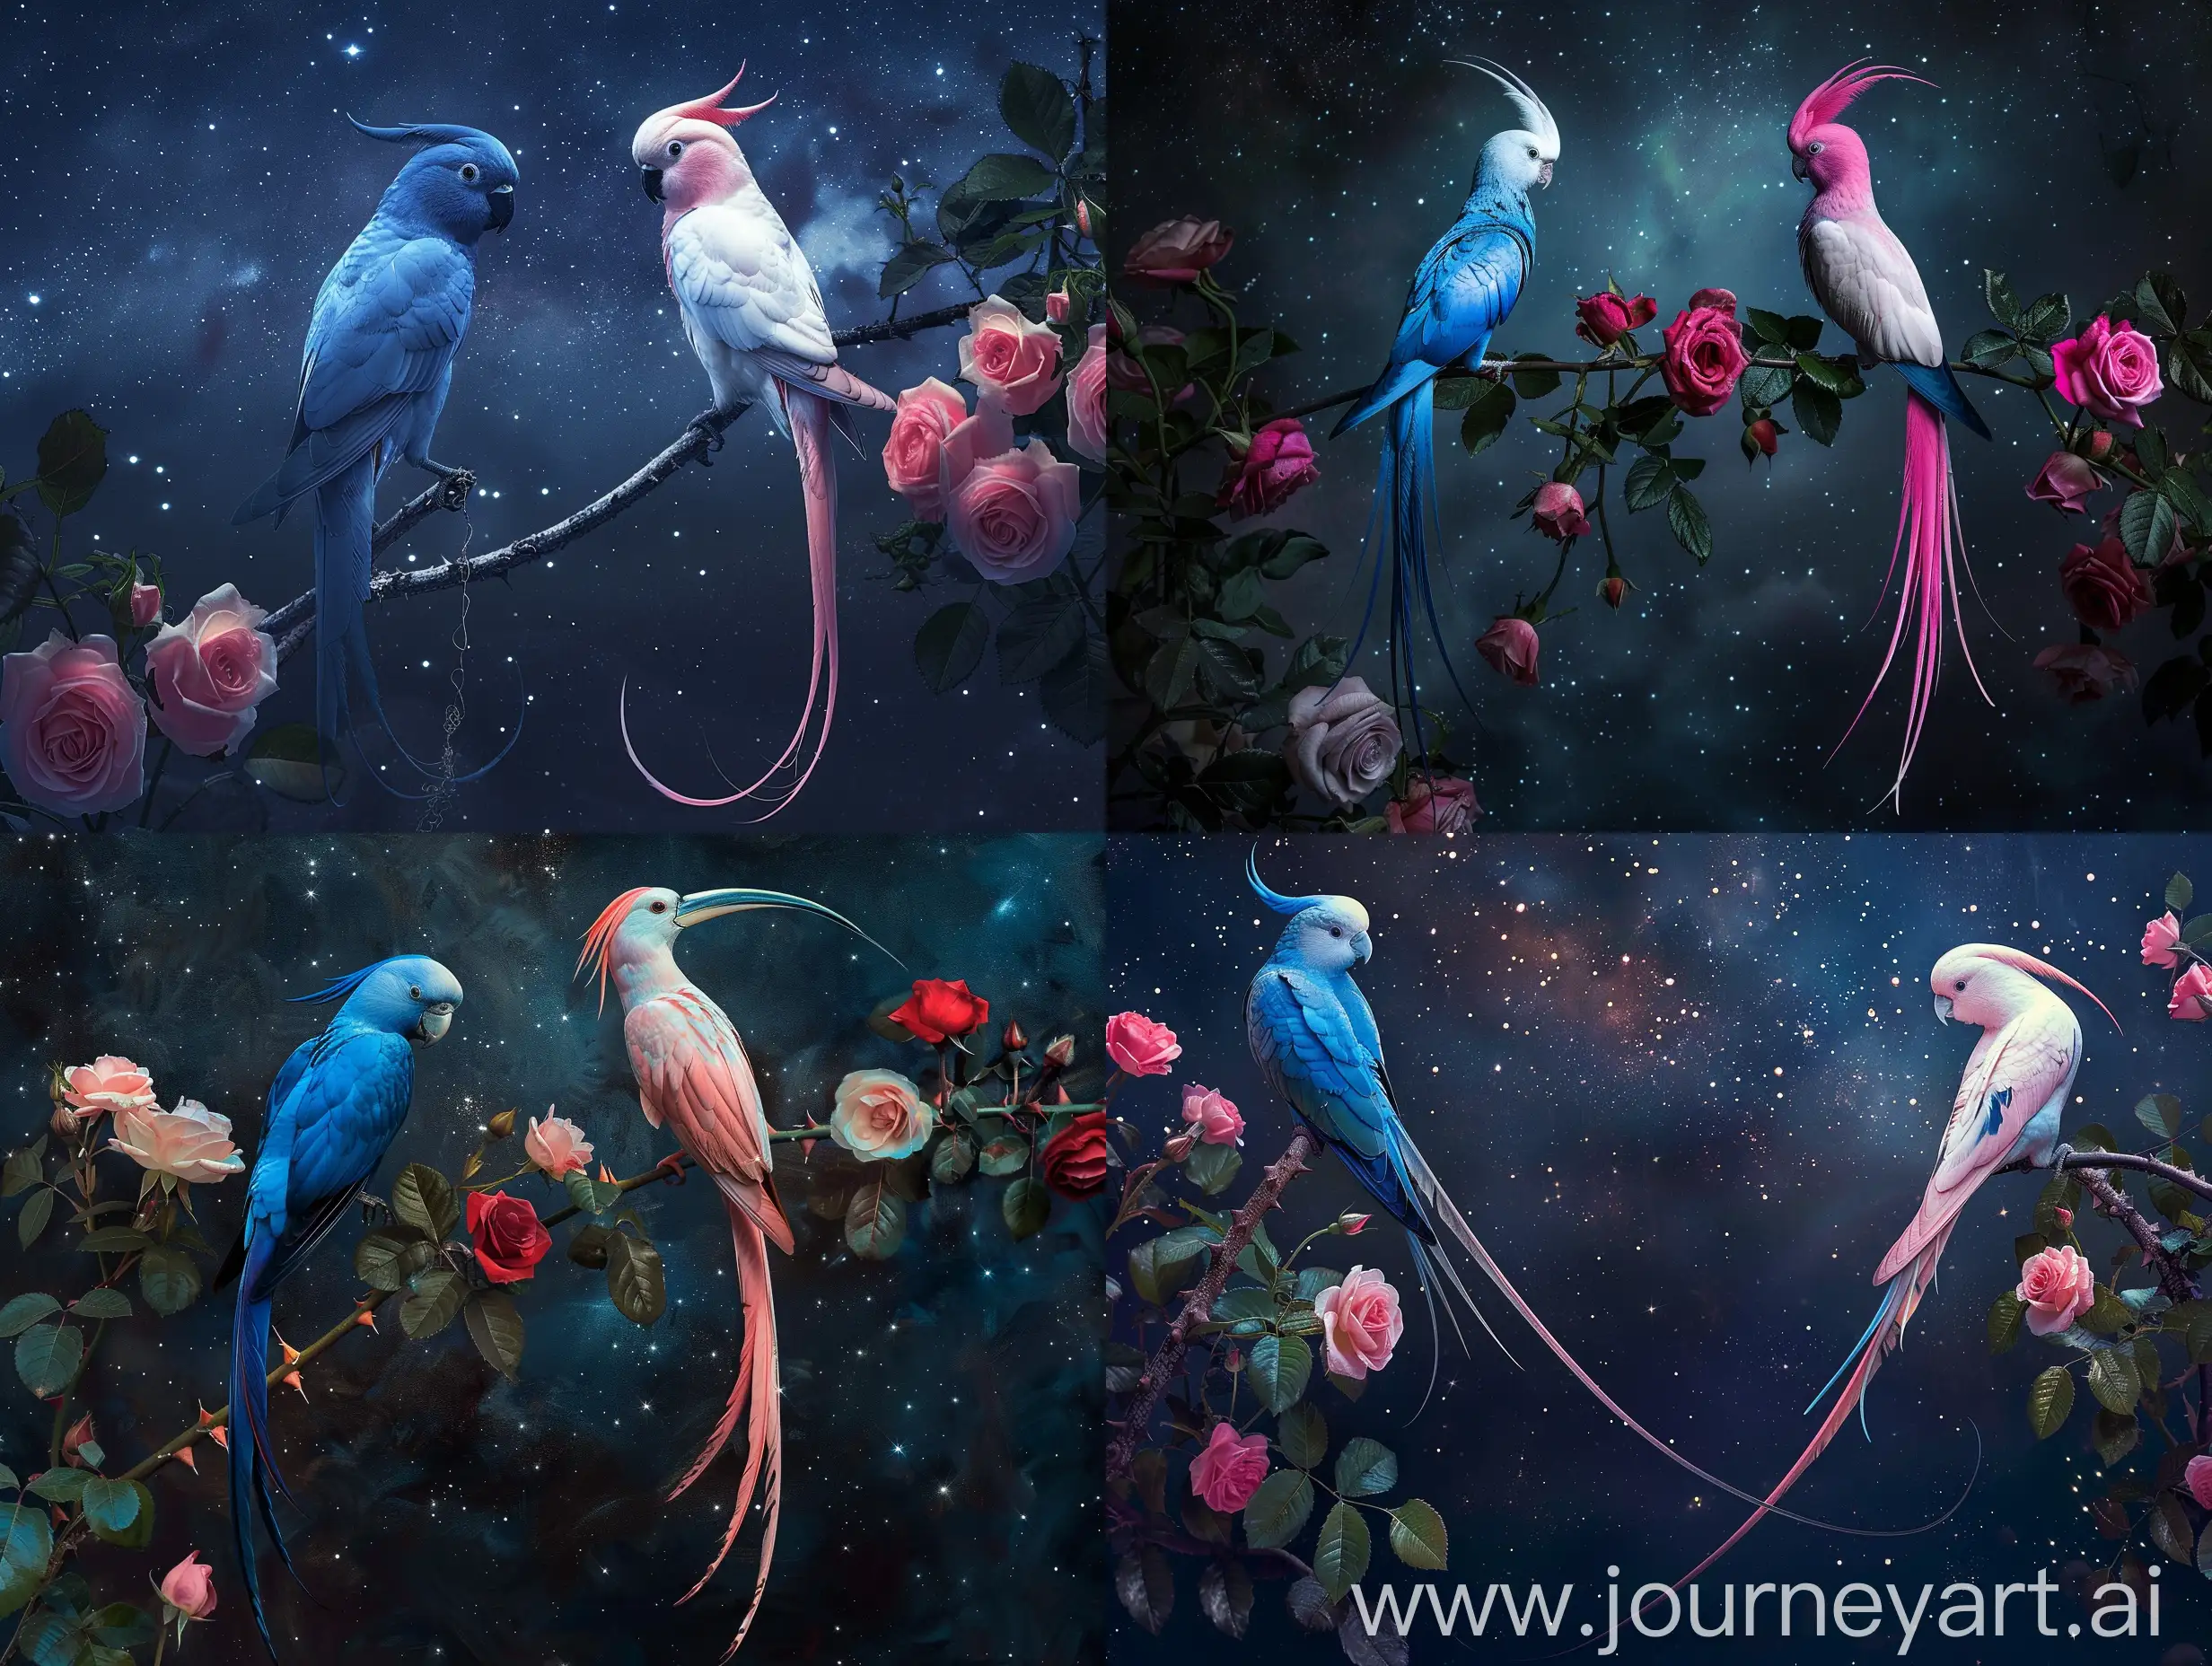 Две очень красивые райские птицы с длинными хвостами, одна синяя вторая розовая ,сидят на ветке с ррзоввмиирозами, на фоне ночного темного звездного неба,профессиональное фото ,гиперреализм ,высокое качество